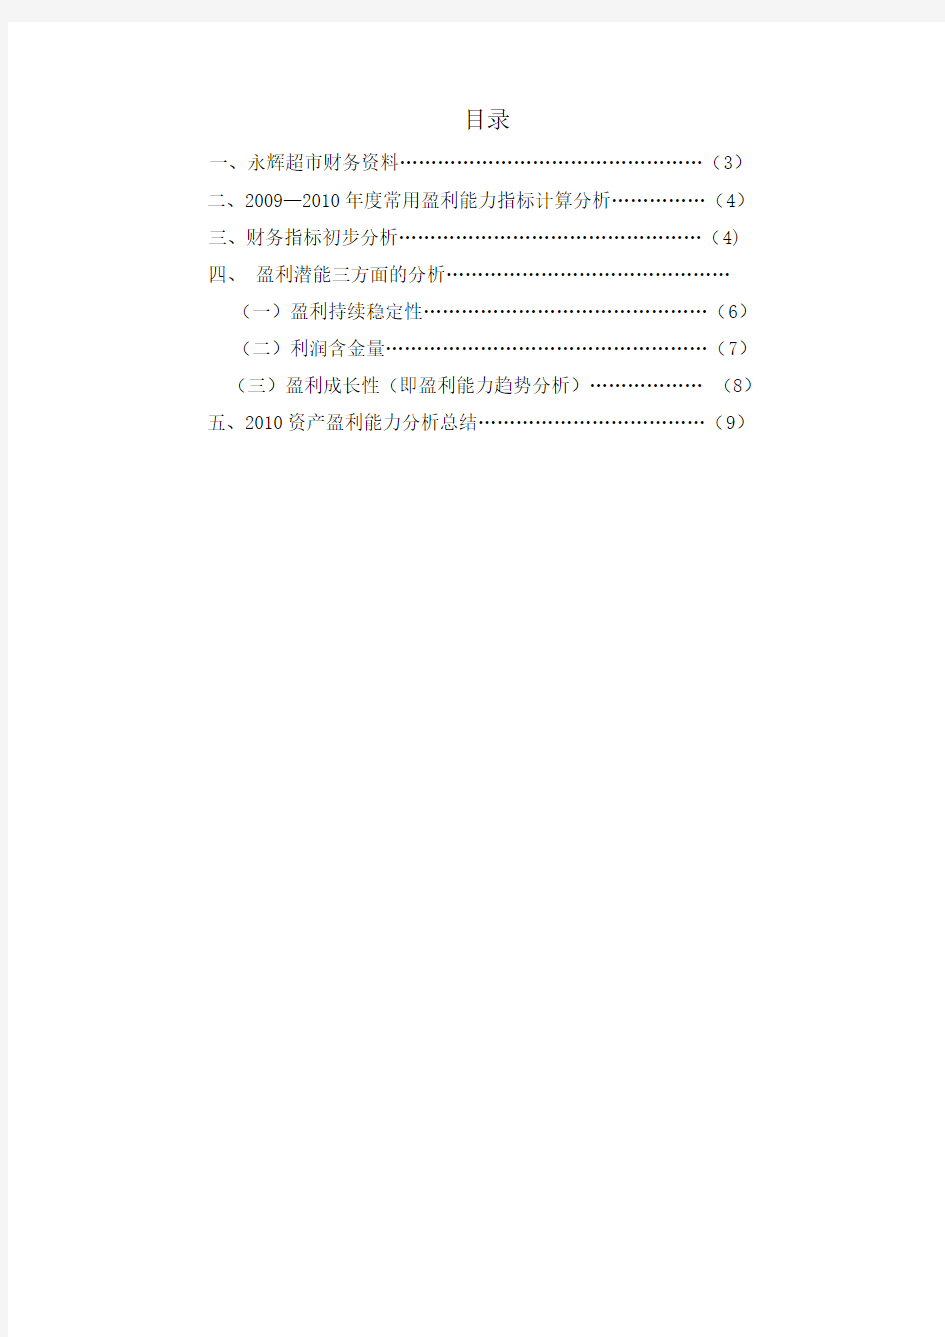 永辉超市2009-2010年盈利潜能分析